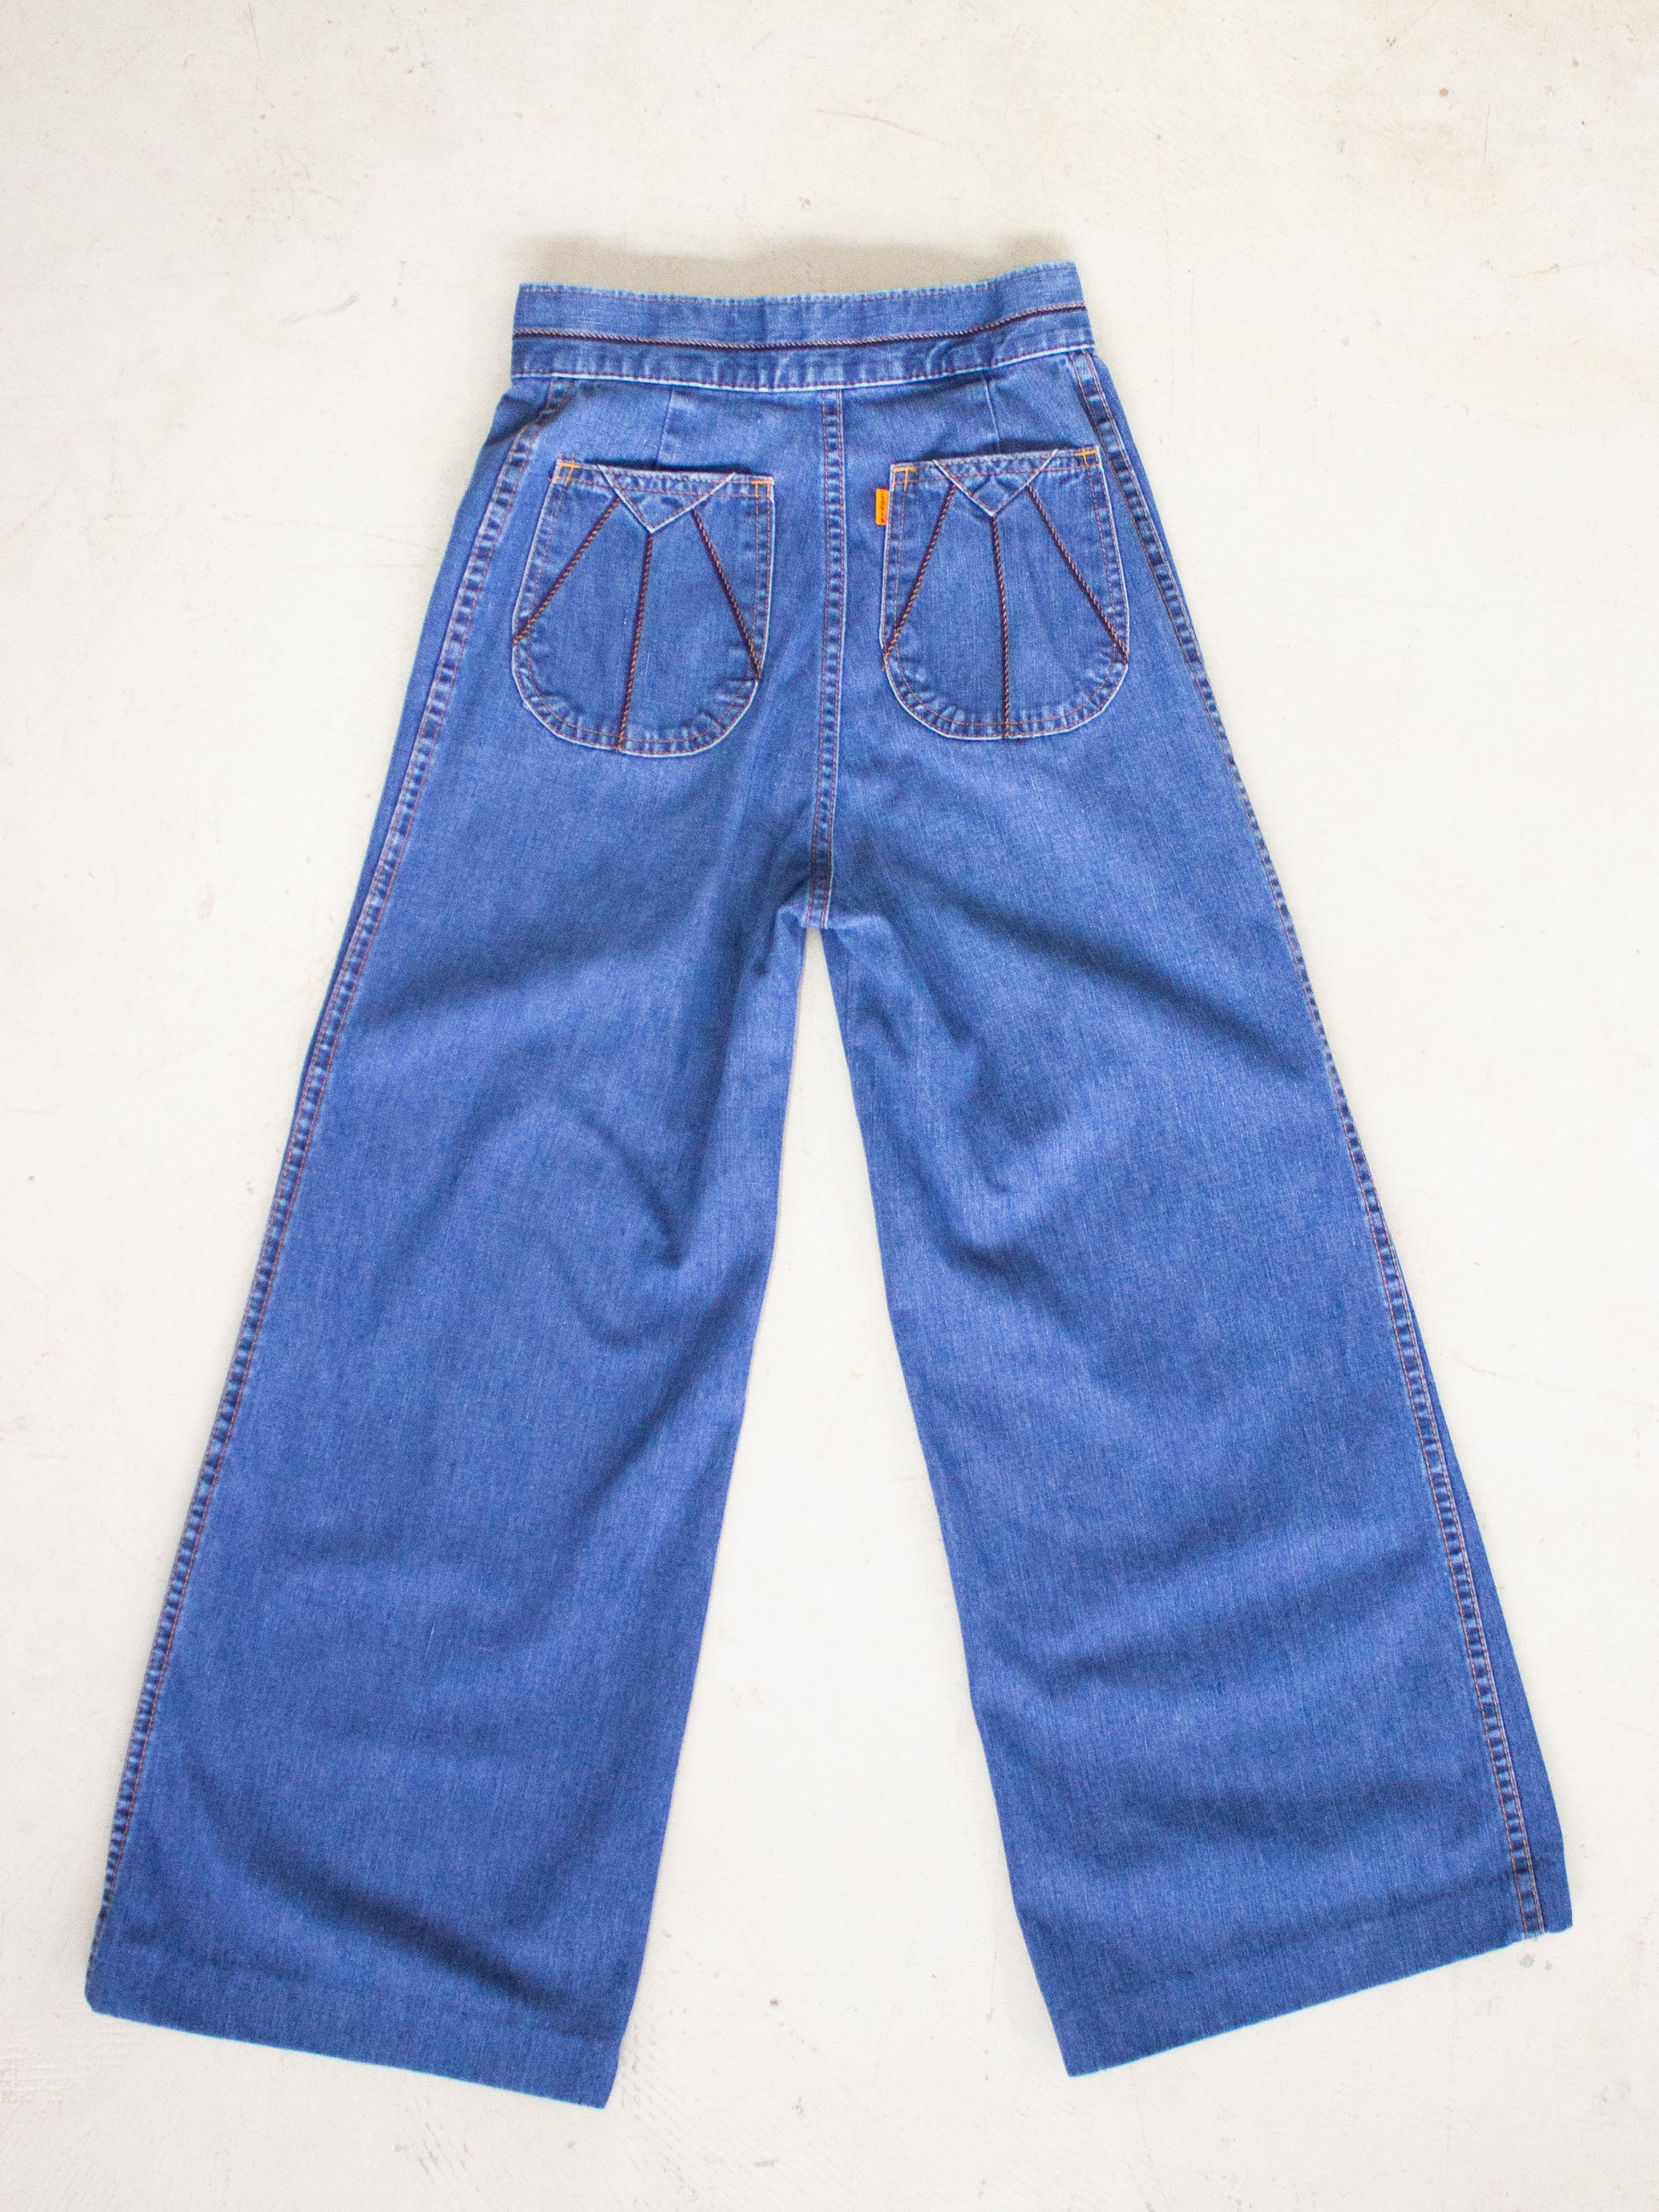 Vintage 1970's Levis' Orange Tab Flared Jeans with Back Pocket